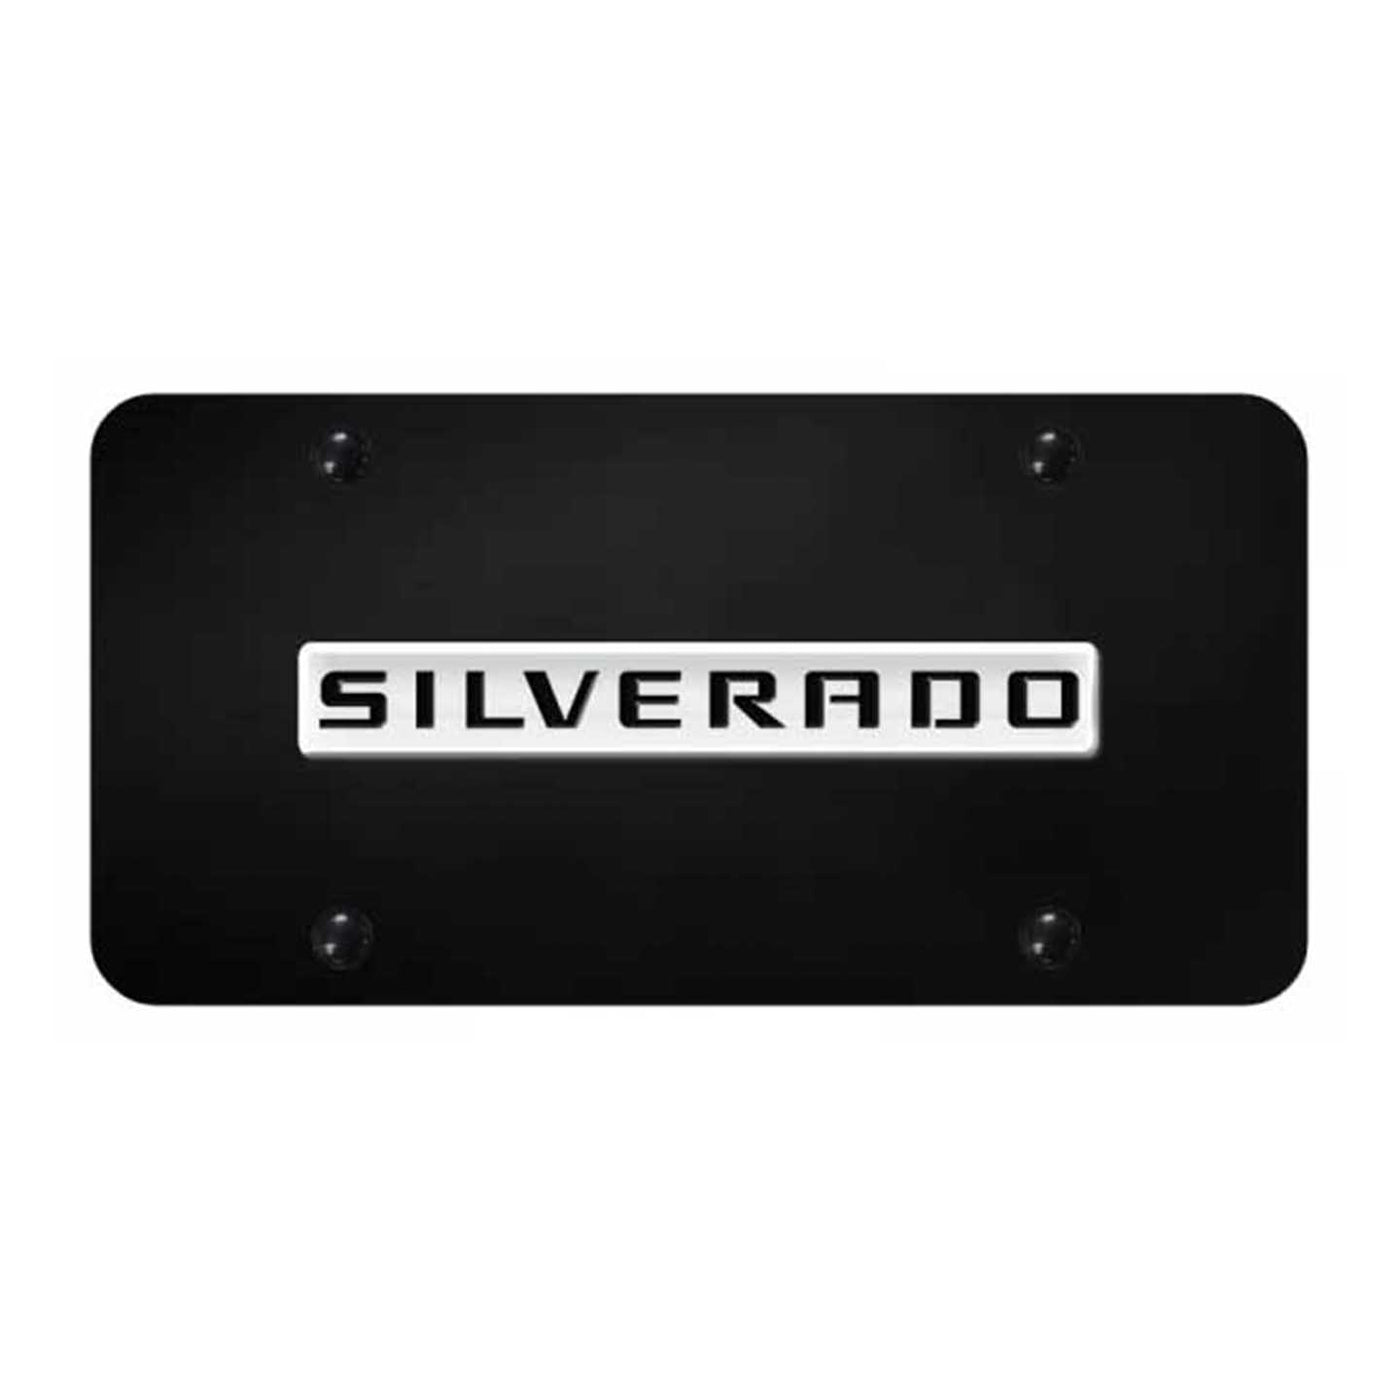 Silverado Name License Plate - Chrome on Black